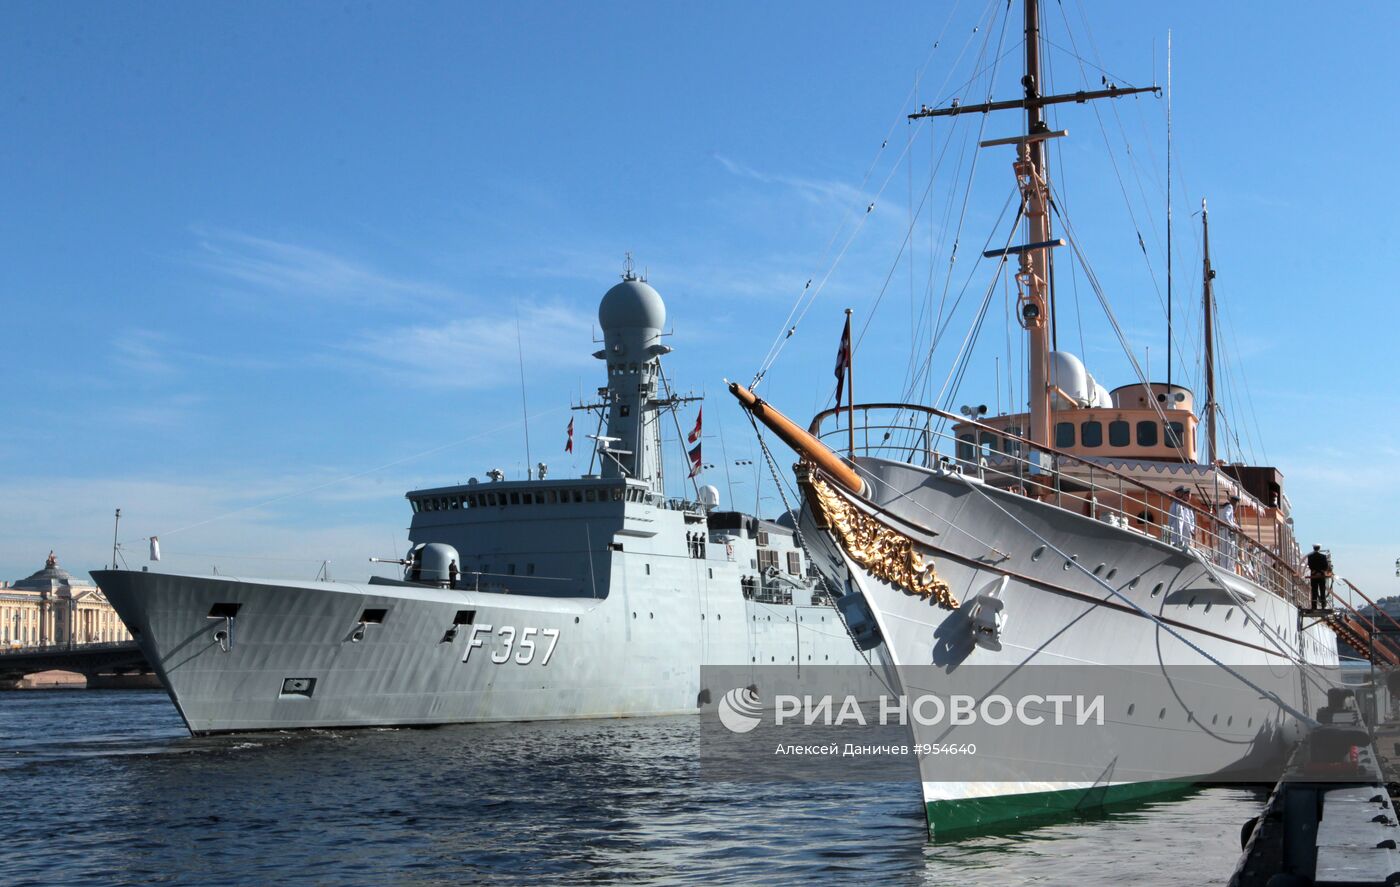 Яхта королевы Дании и датский фрегат пришвартовались в Петербург